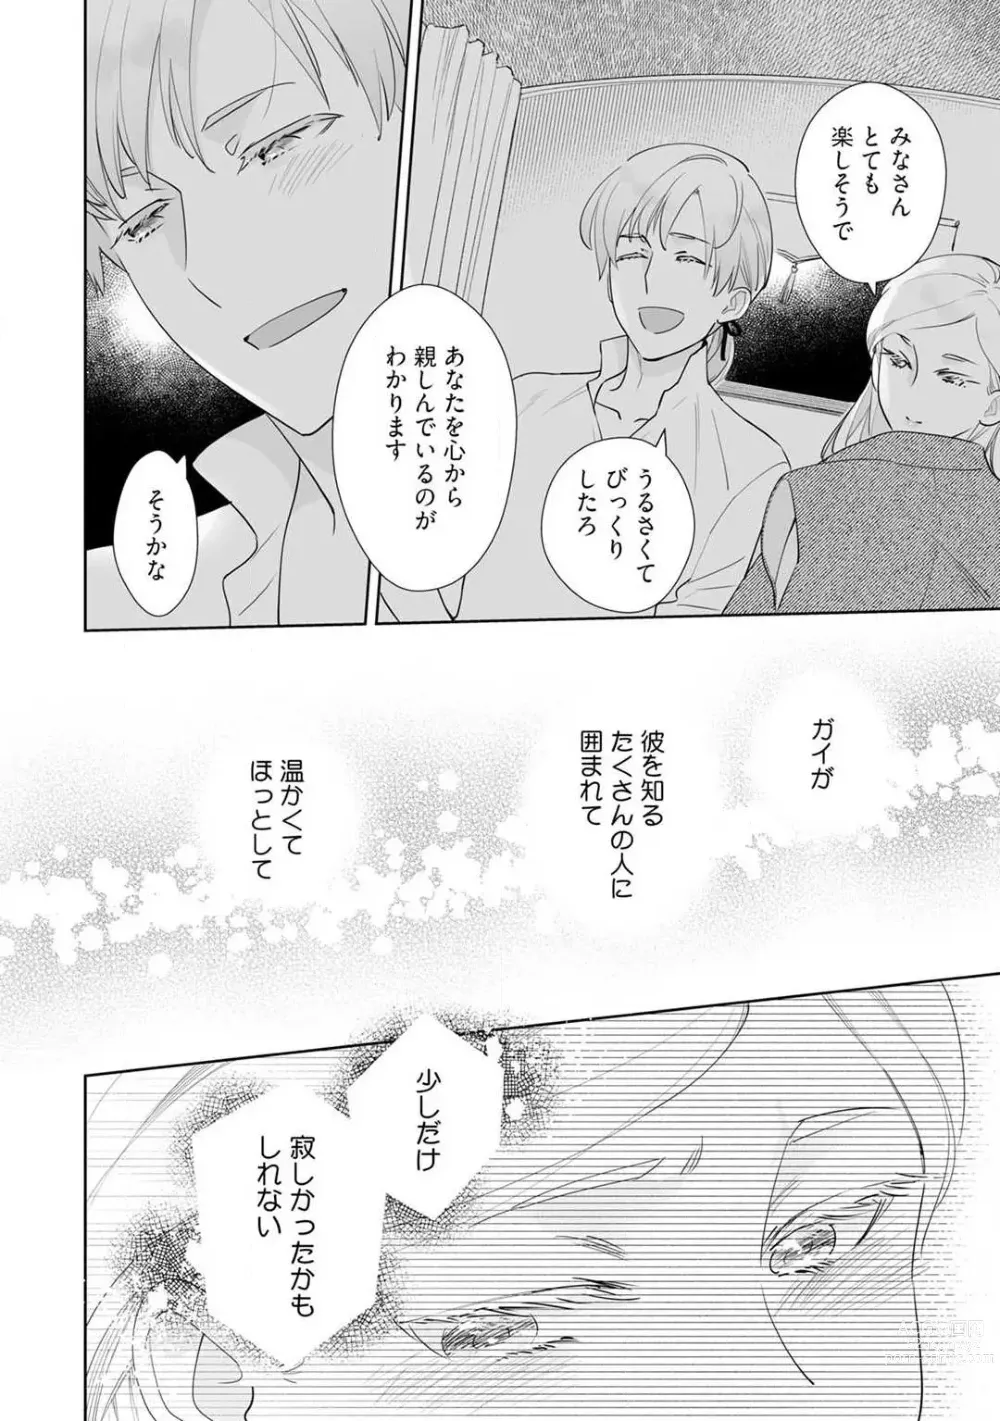 Page 281 of manga Konyaku Hakisareta Akuyaku Reijou, Ikemen Shisanka ni Kyuukonsaremashita. 1-9